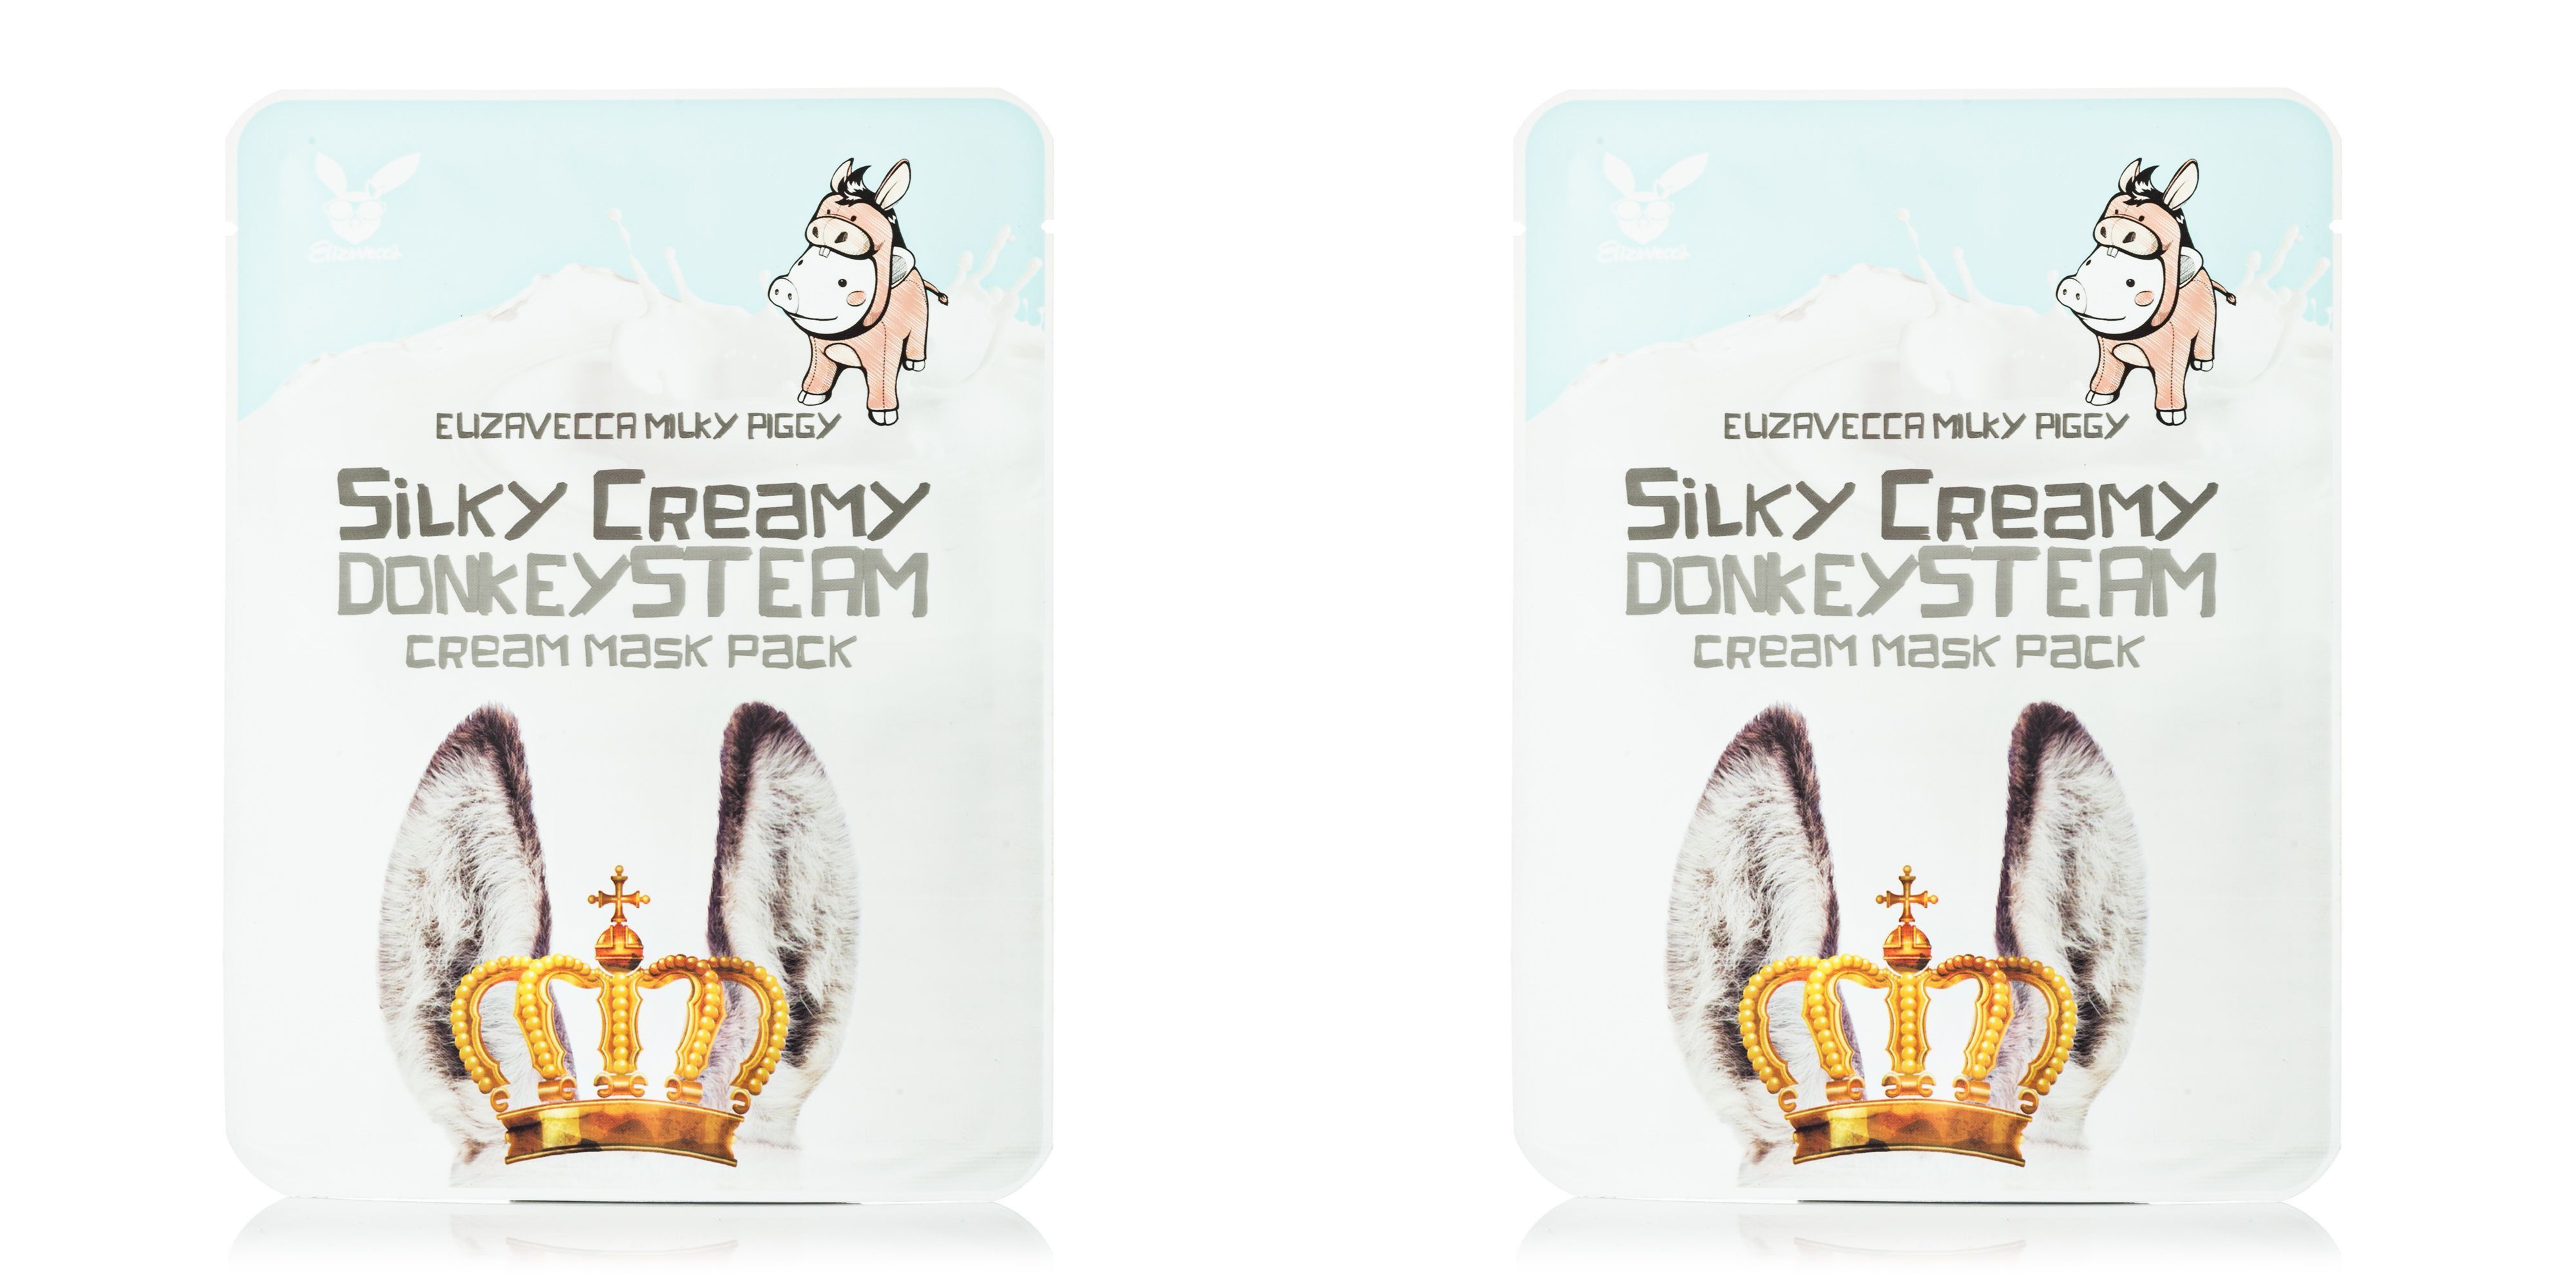 Silky creamy donkey steam cream mask фото 2